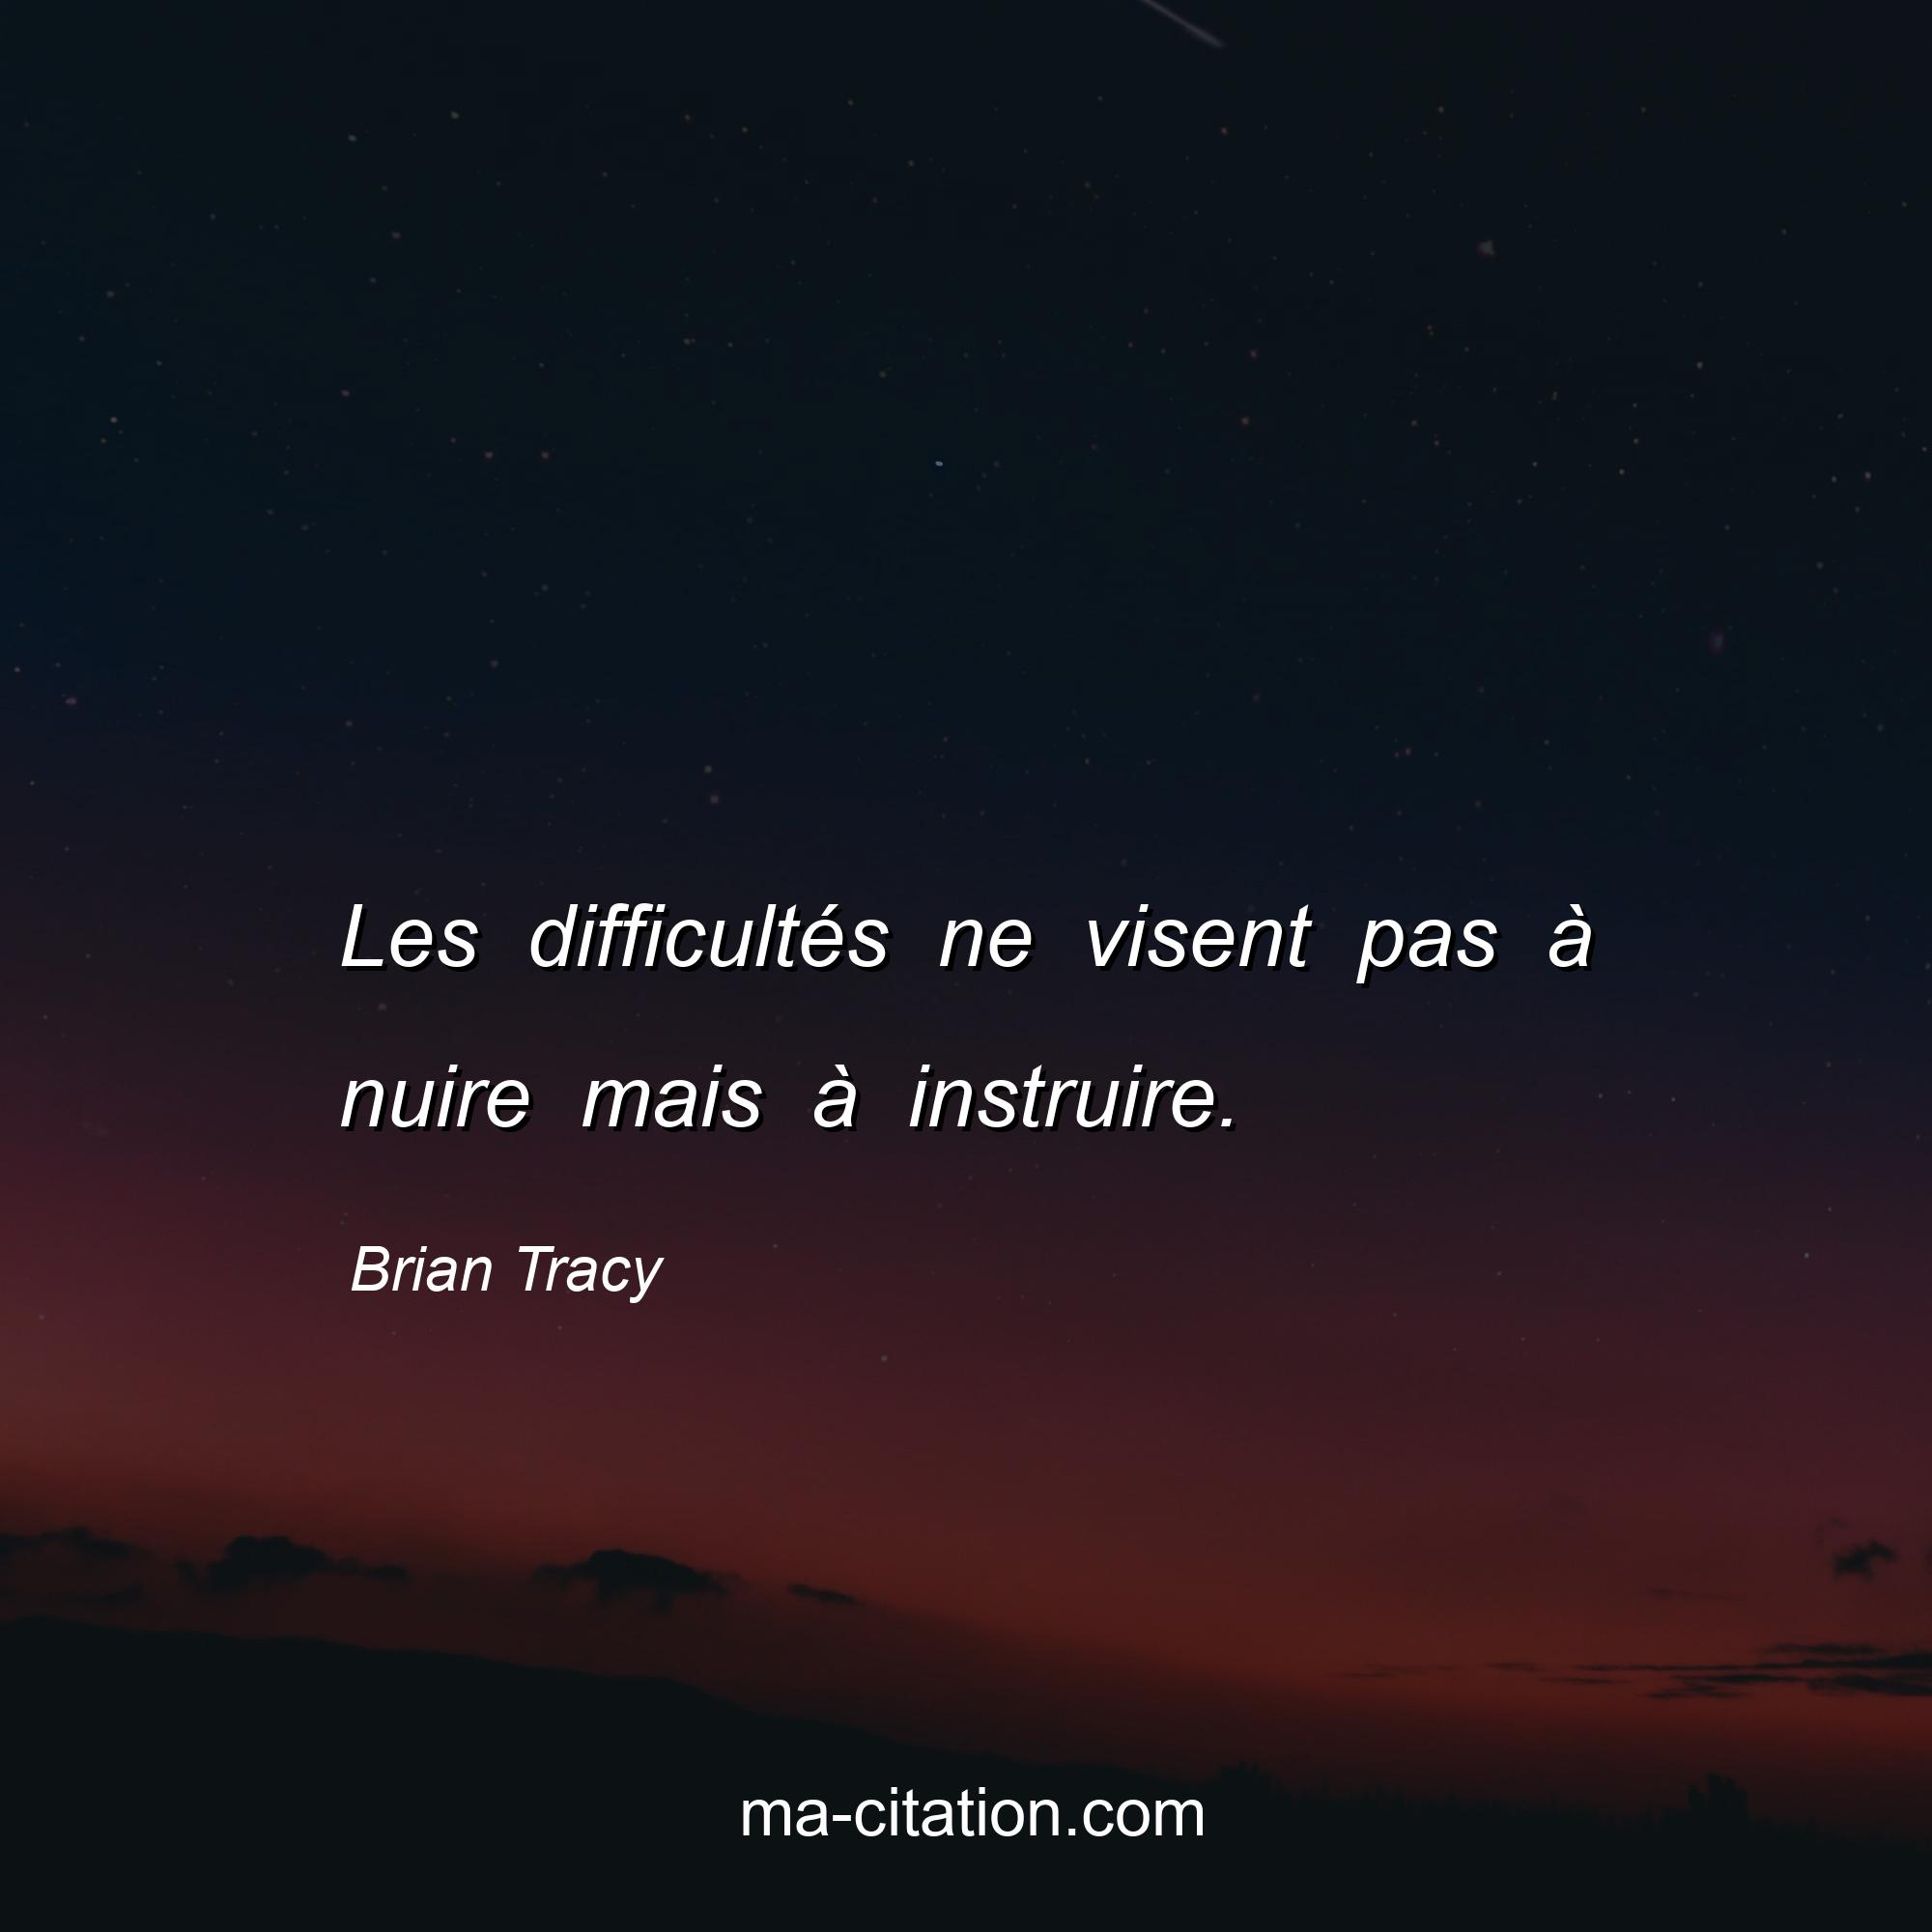 Brian Tracy : Les difficultés ne visent pas à nuire mais à instruire.